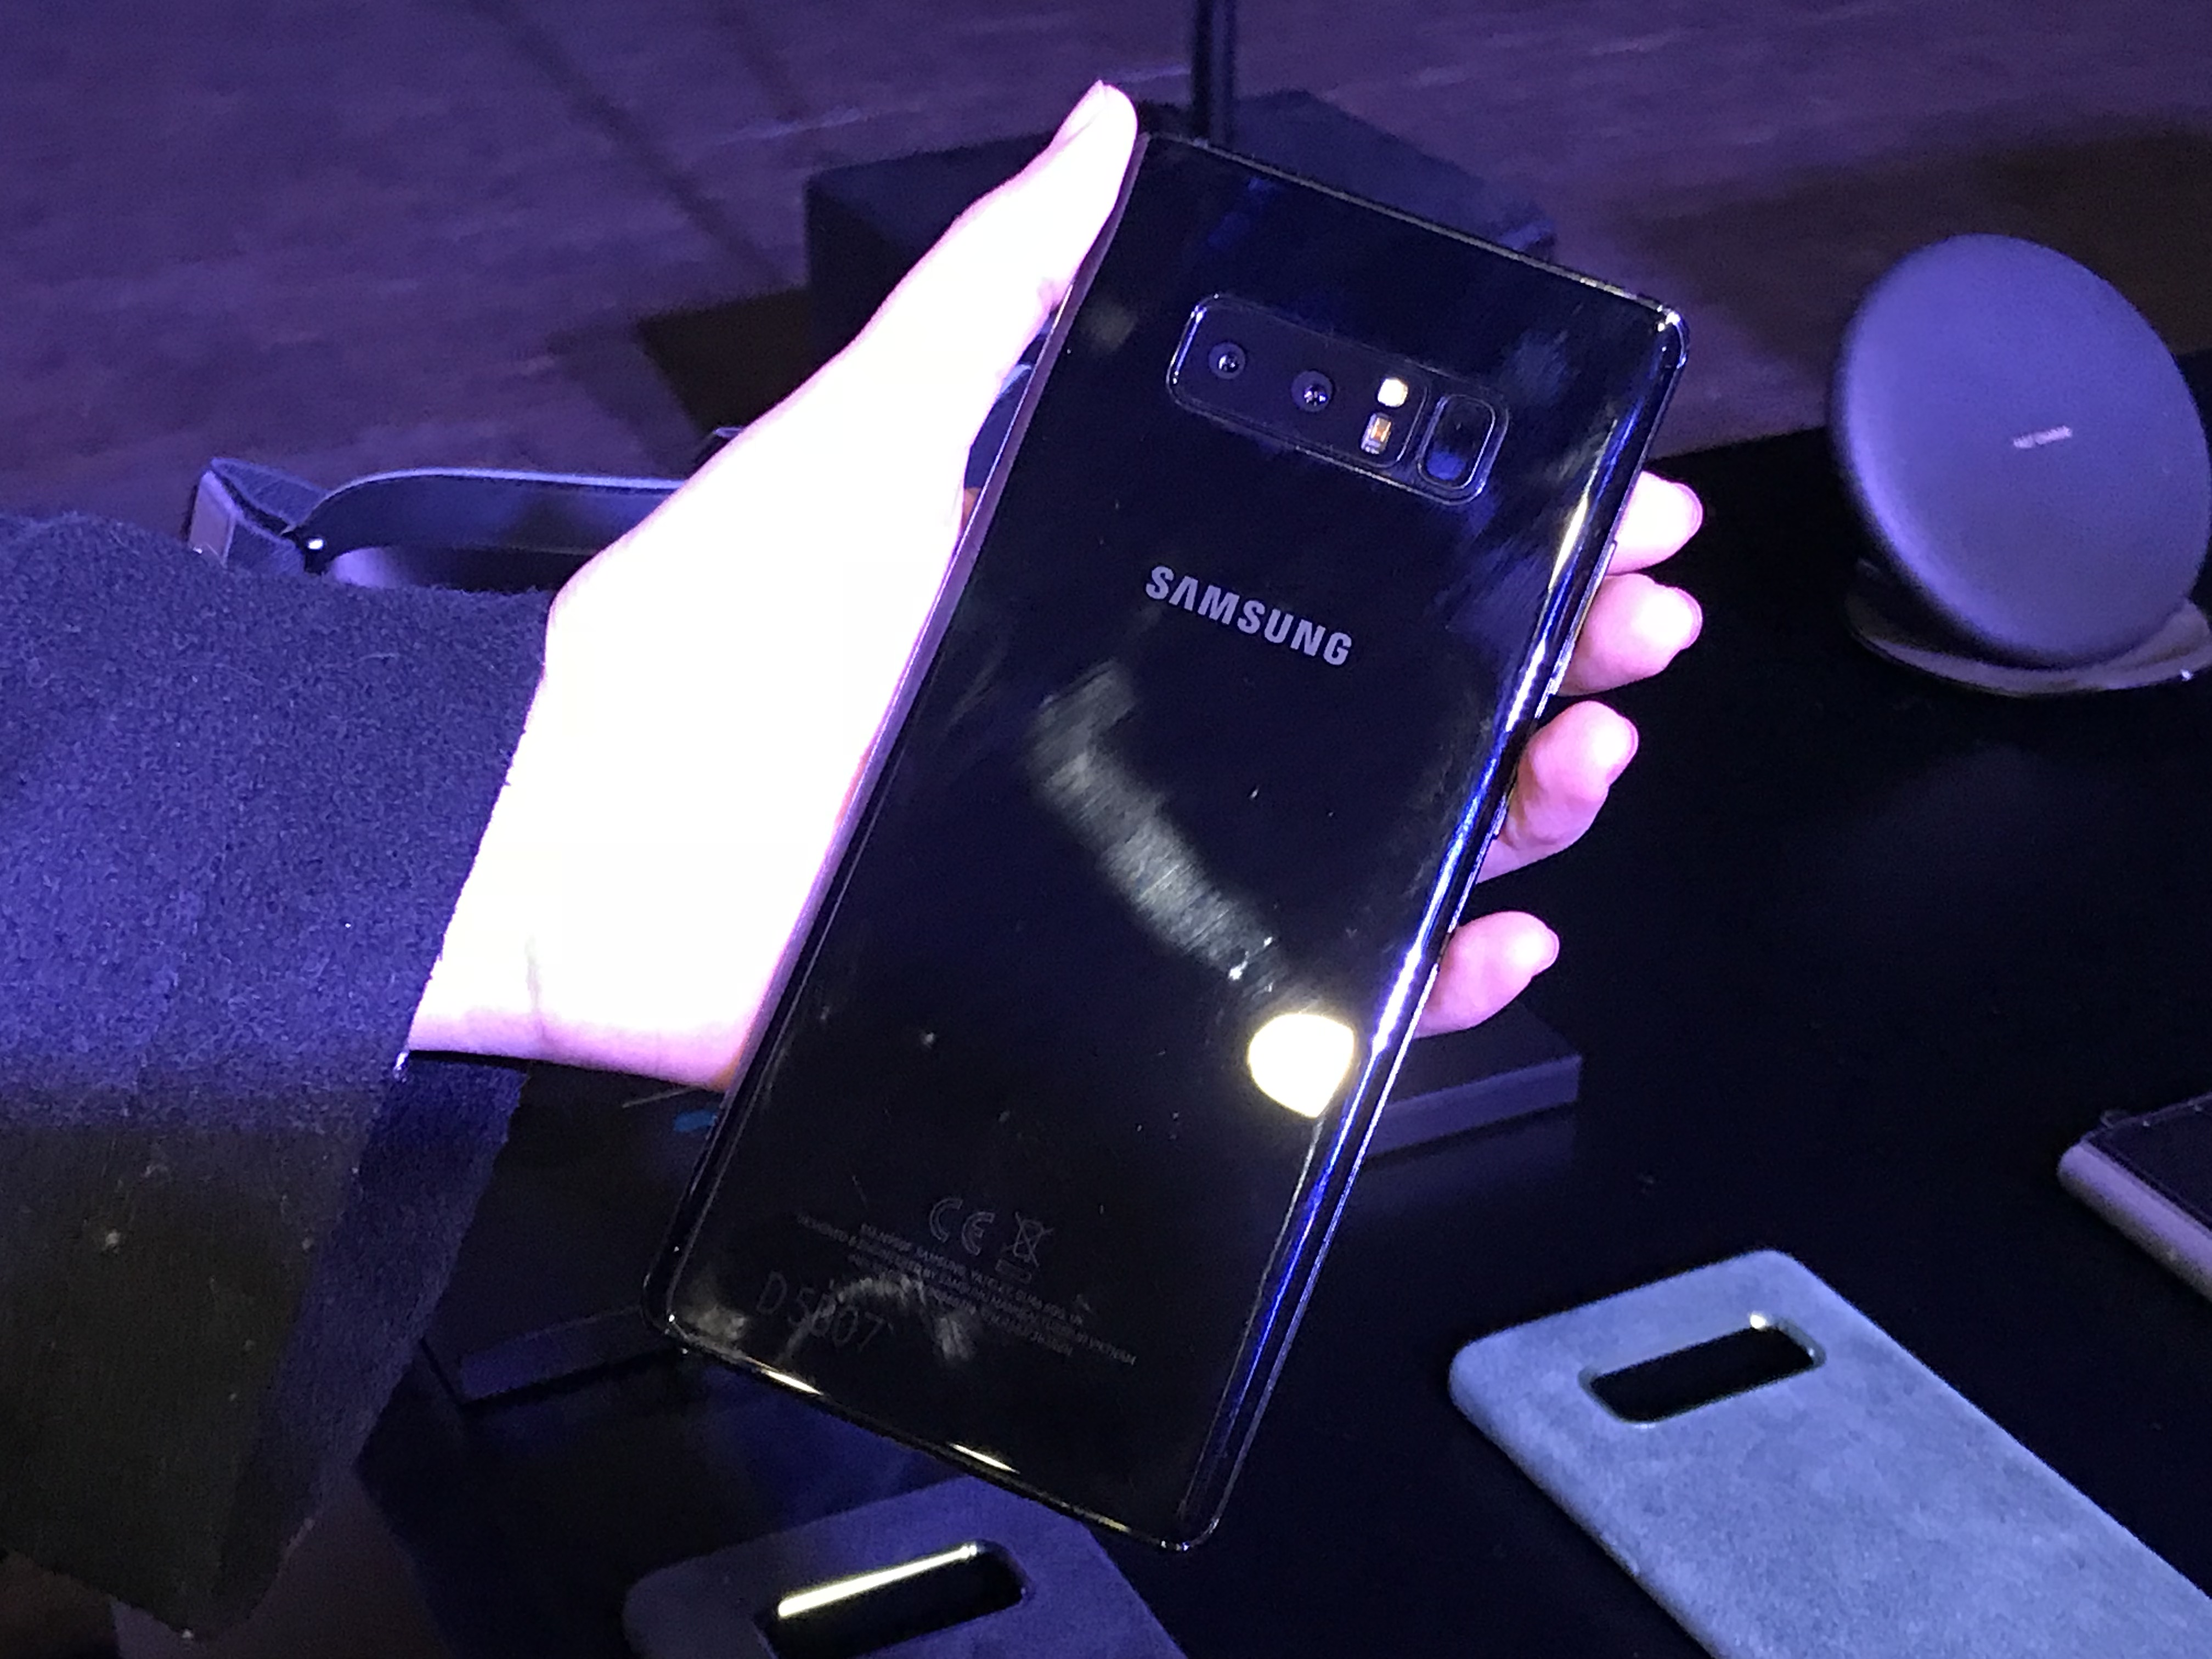 Kesan pertama Samsung Galaxy Note 8 4"lebar =" 4032 "tinggi =" 3024